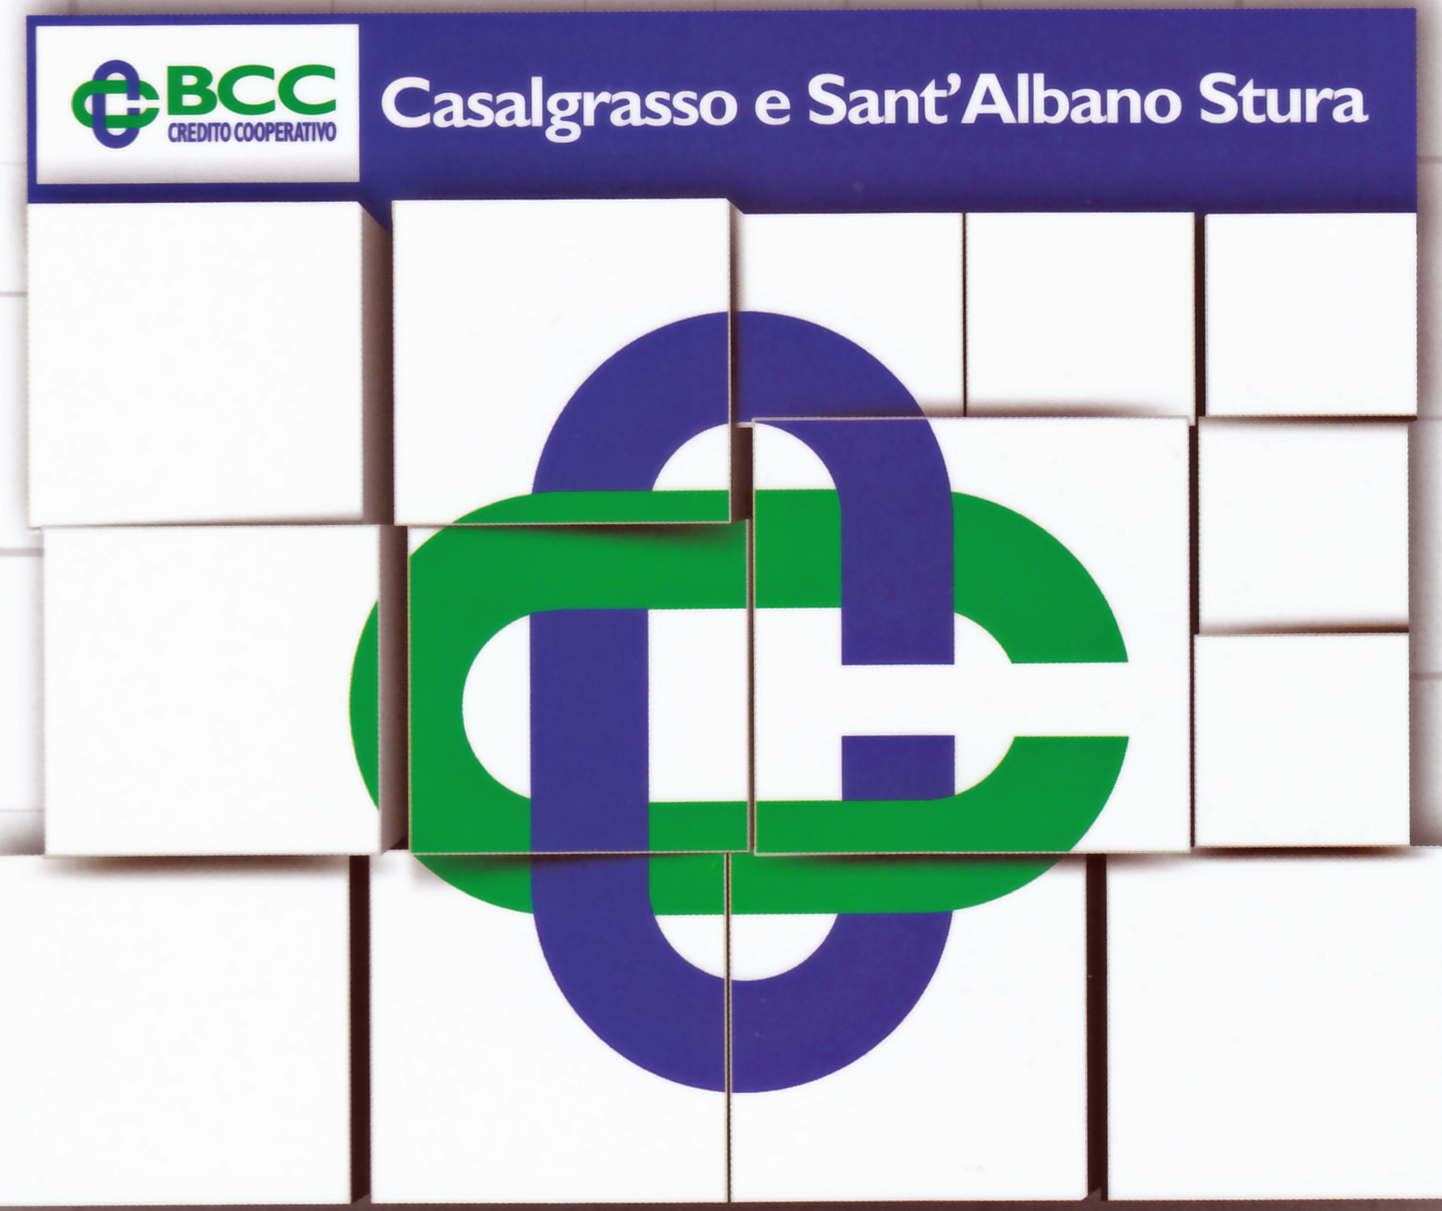 BCC Casalgrasso e Sant'Albano di Stura